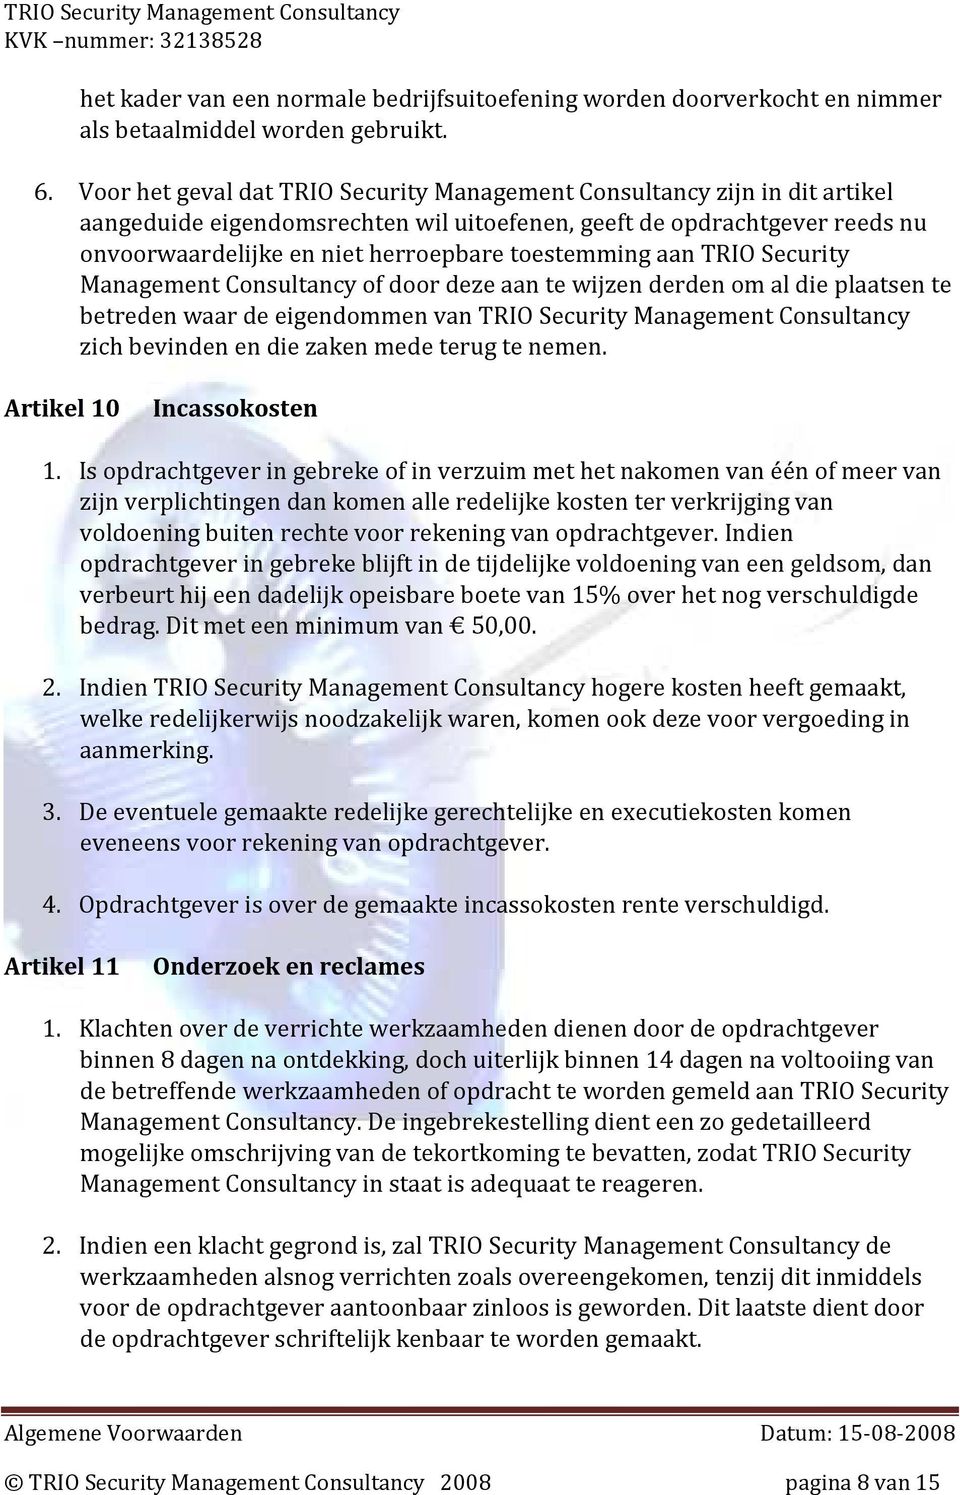 toestemming aan TRIO Security Management Consultancy of door deze aan te wijzen derden om al die plaatsen te betreden waar de eigendommen van TRIO Security Management Consultancy zich bevinden en die